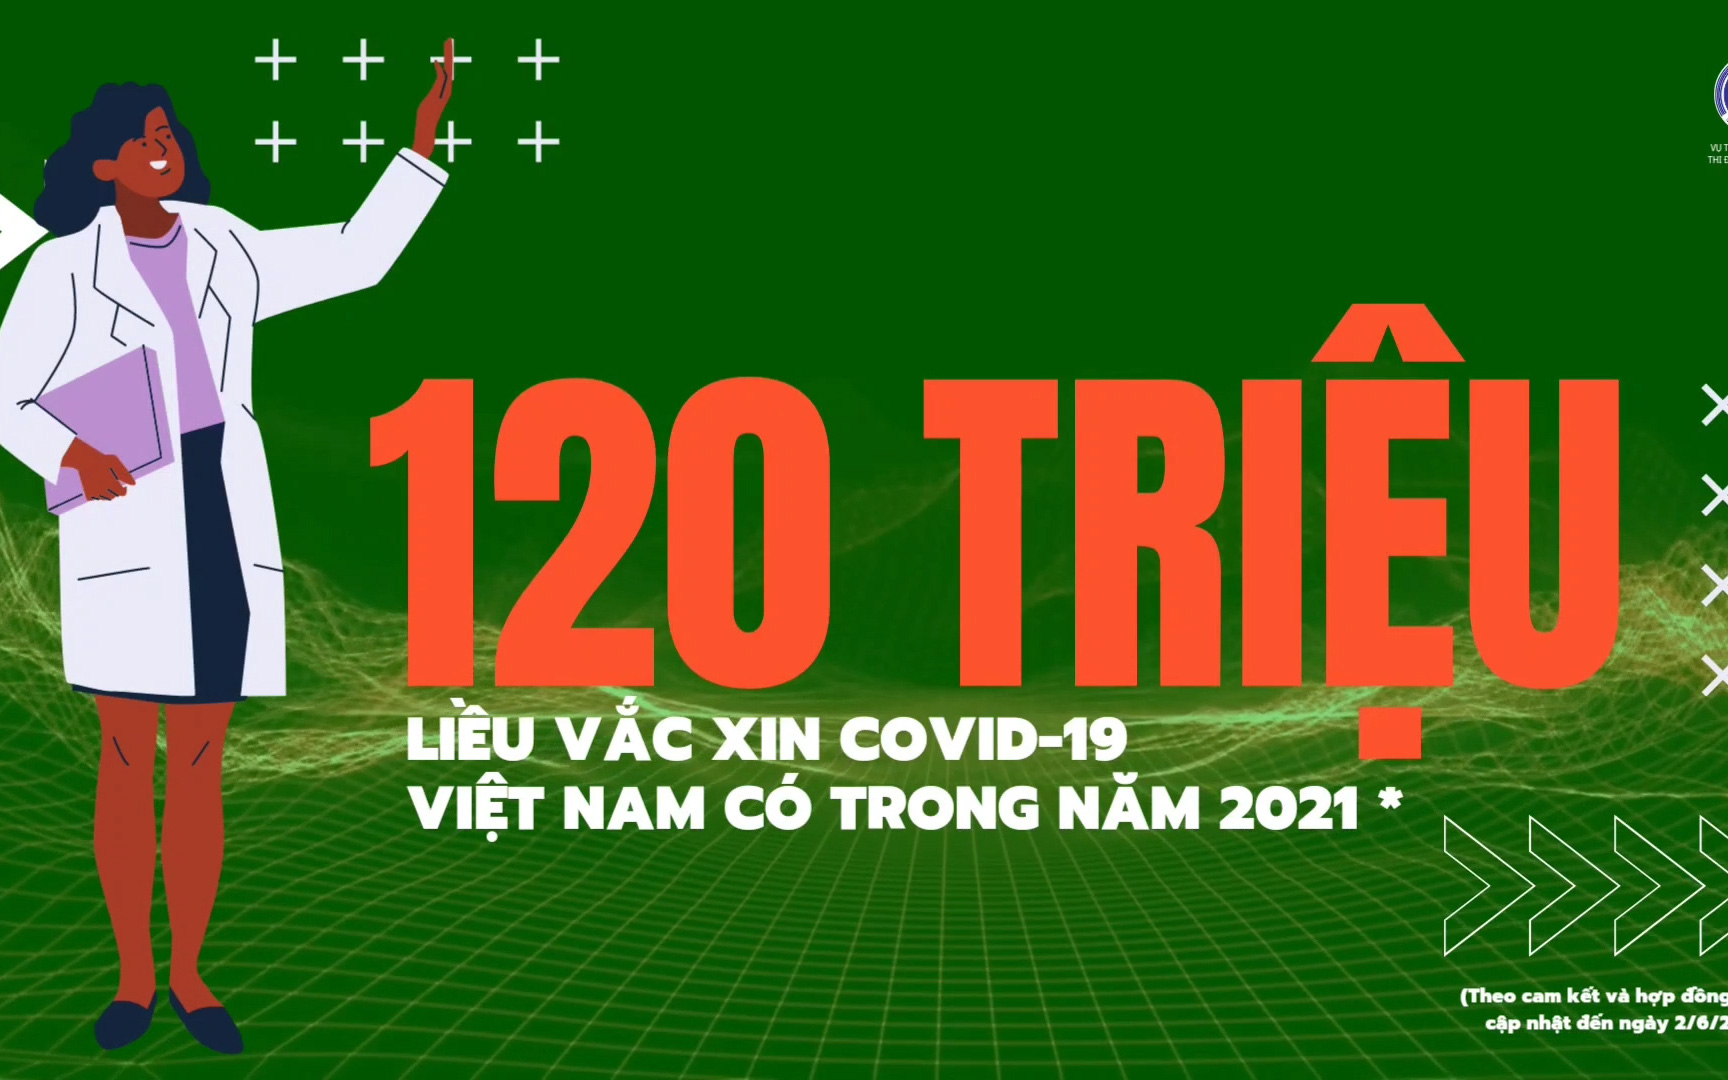 Thông tin từ Bộ Y tế ngày 9/6: Hơn 120 triệu liều vắc xin phòng Covid-19 cho Việt Nam trong năm 2021